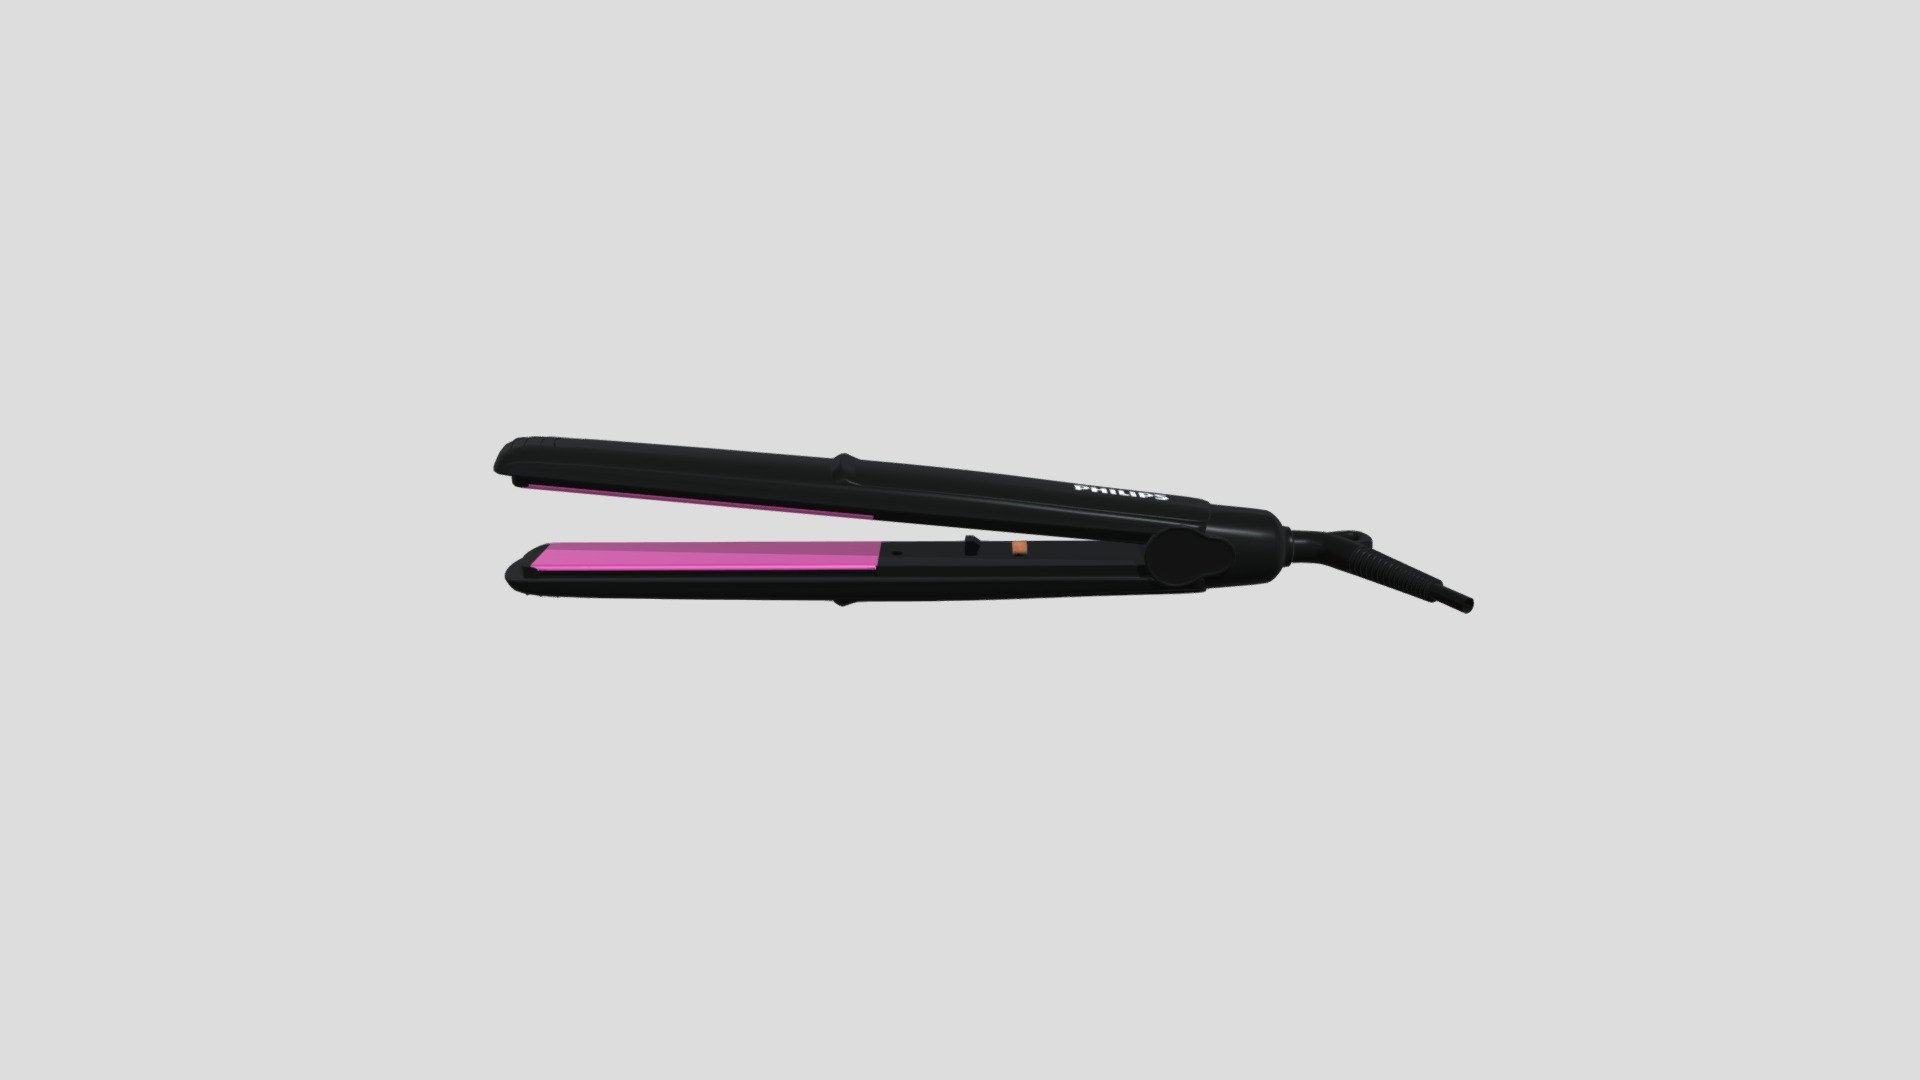 Philips Hair Straightner AR Model - 3D model by koushikgodugu 3d model